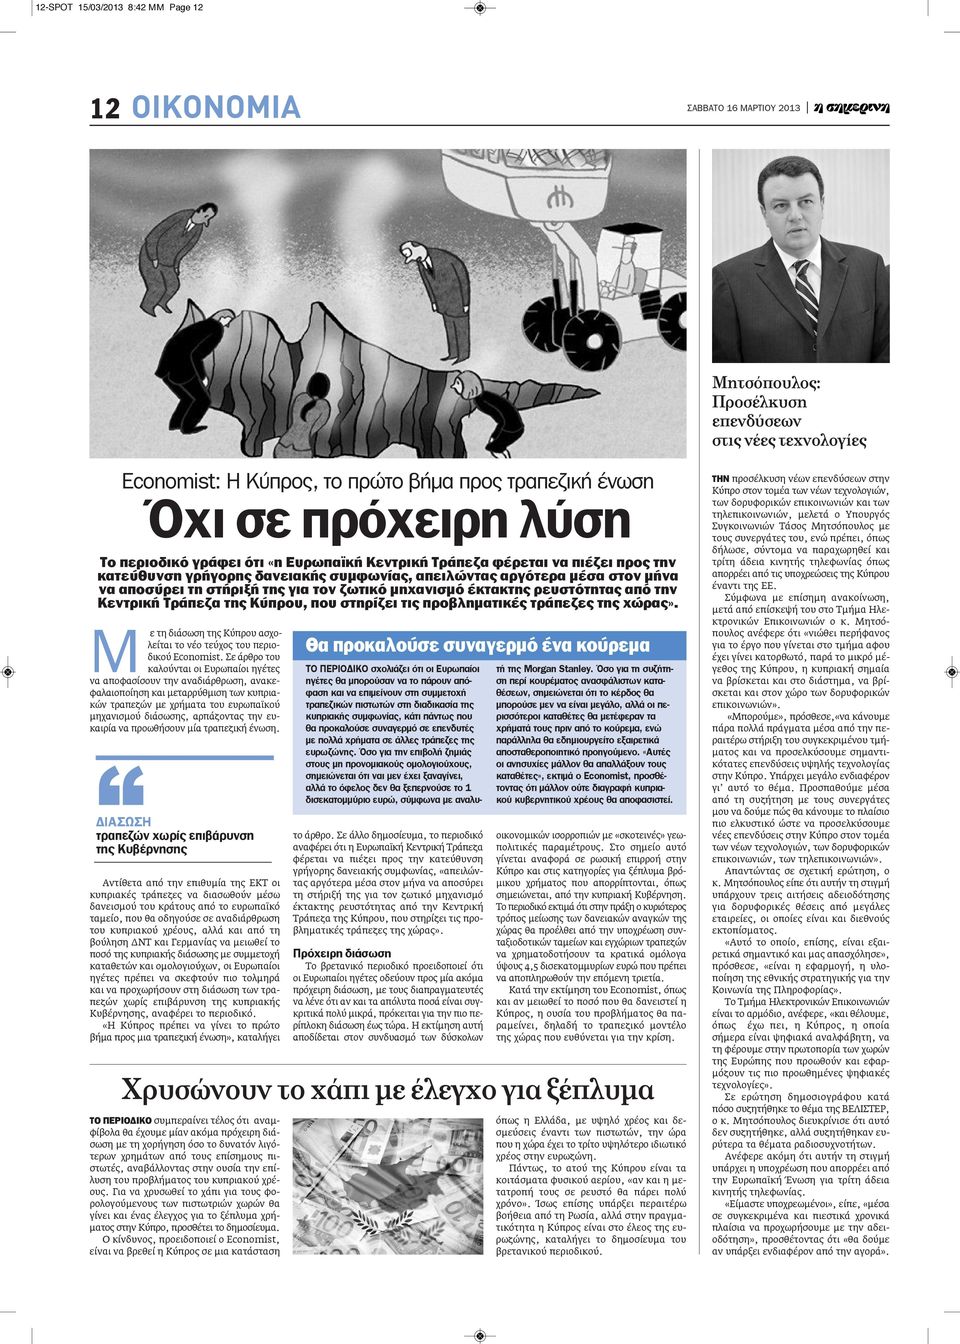 έκτακτης ρευστότητας από την κεντρική Τράπεζα της κύπρου, που στηρίζει τις προβληματικές τράπεζες της χώρας». Μ ε τη διάσωση της Κύπρου ασχολείται το νέο τεύχος του περιοδικού Economist.